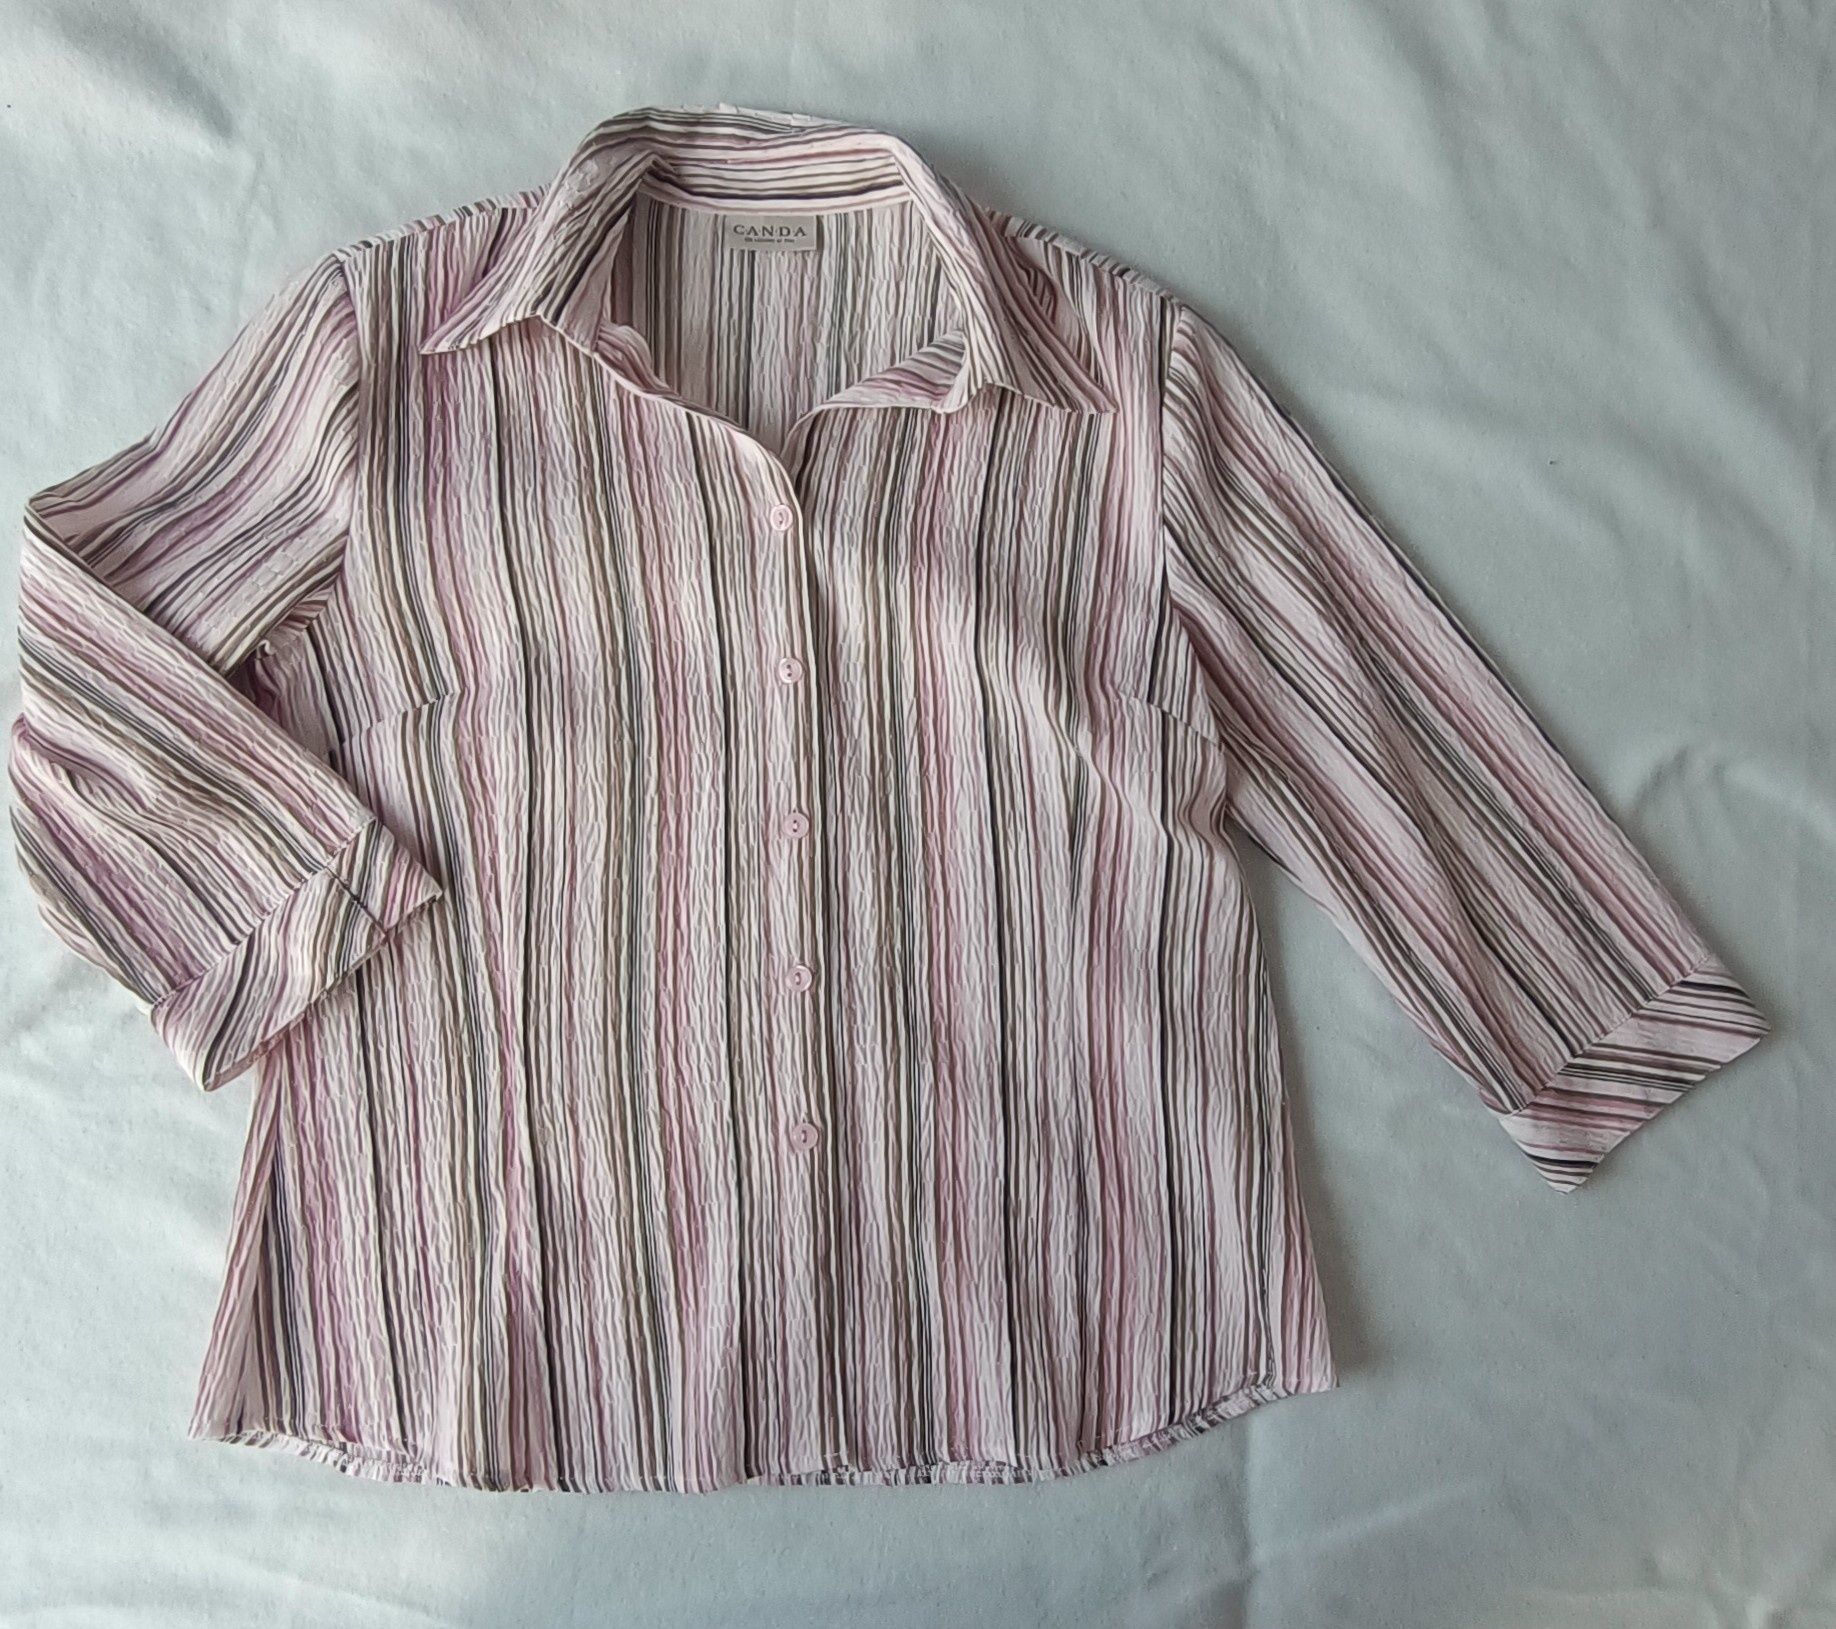 Koszula damksa w różowe pionowe paski, rękaw 3/4, rozmiar 40